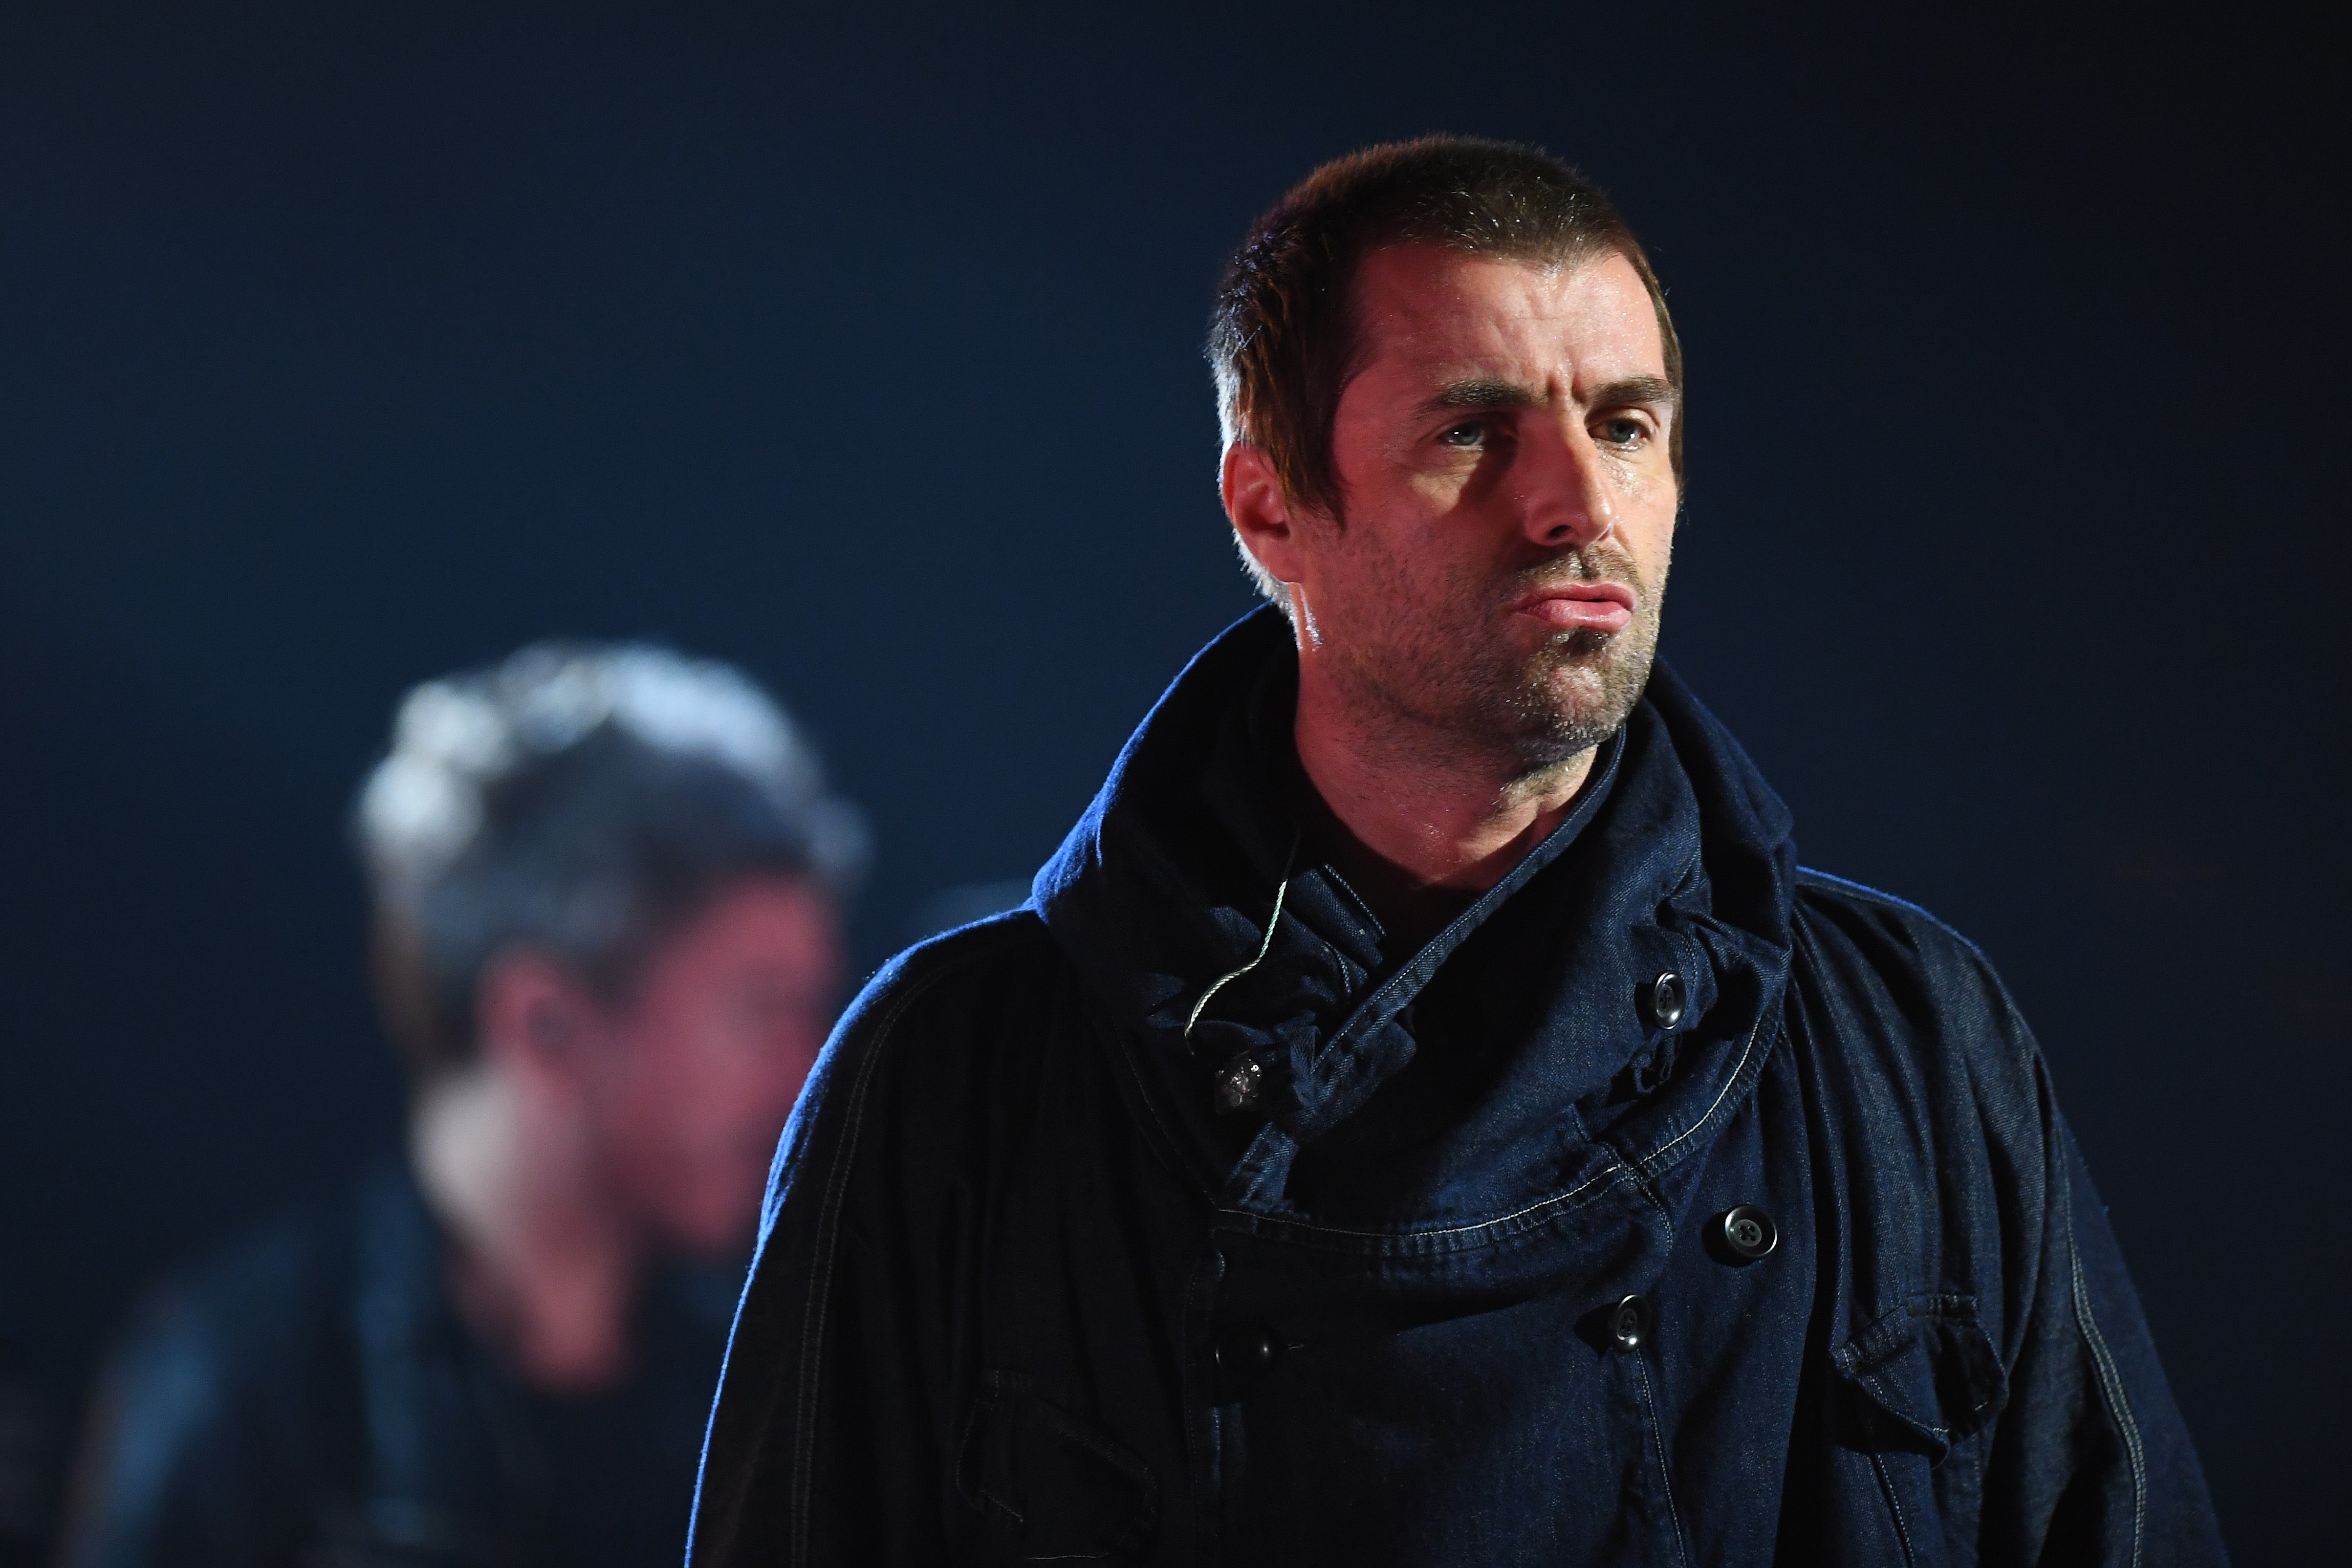 El incidente tuvo lugar en un concierto del exlíder de Oasis, Liam Gallagher